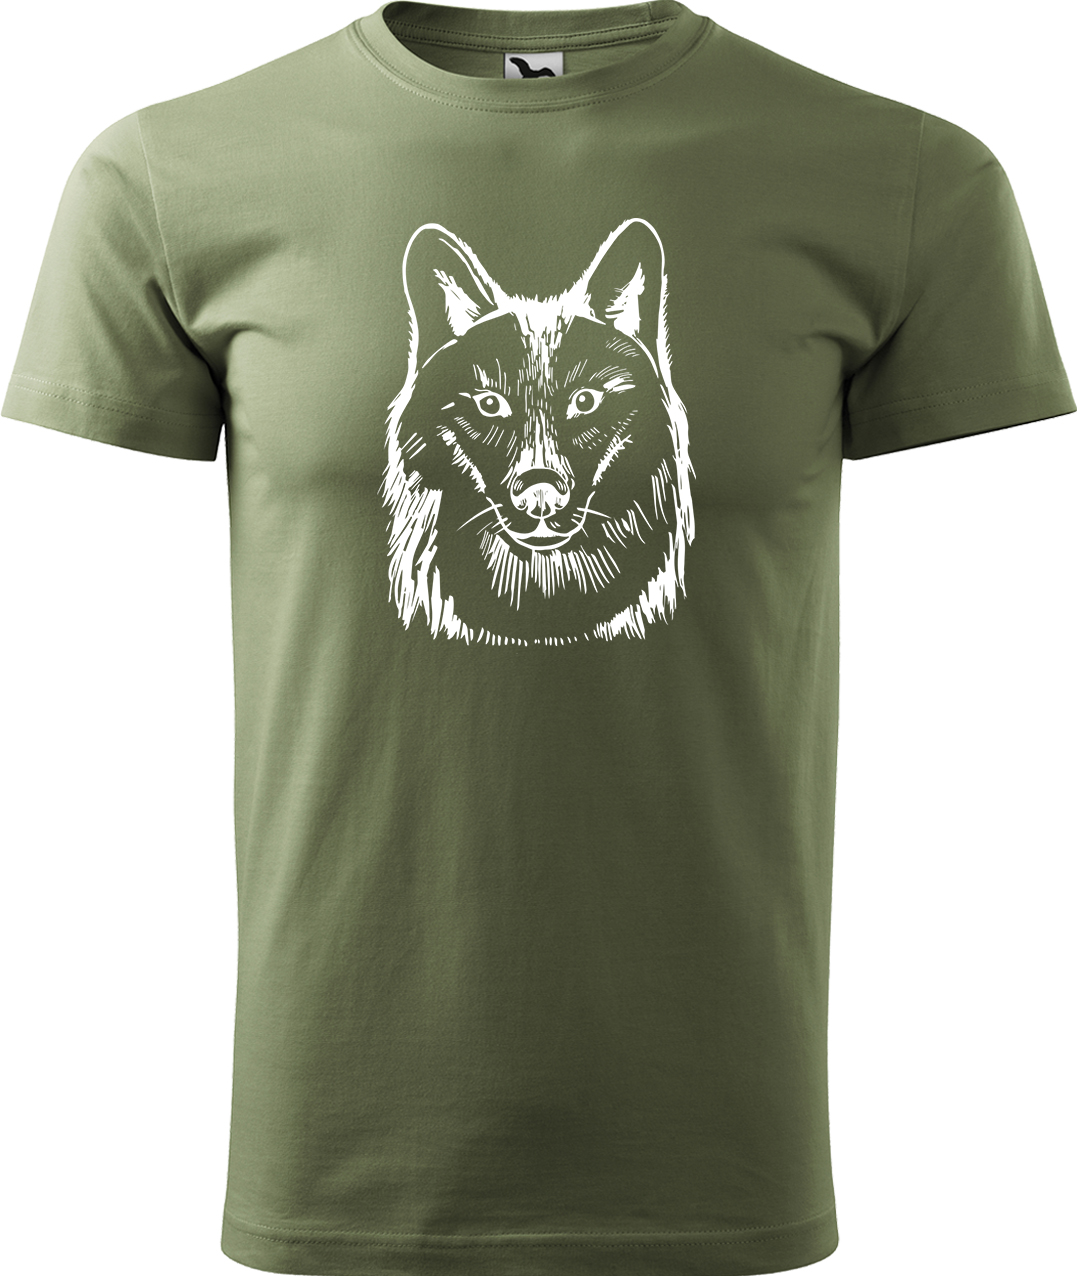 Pánské tričko s vlkem - Kresba vlka Velikost: 3XL, Barva: Světlá khaki (28), Střih: pánský